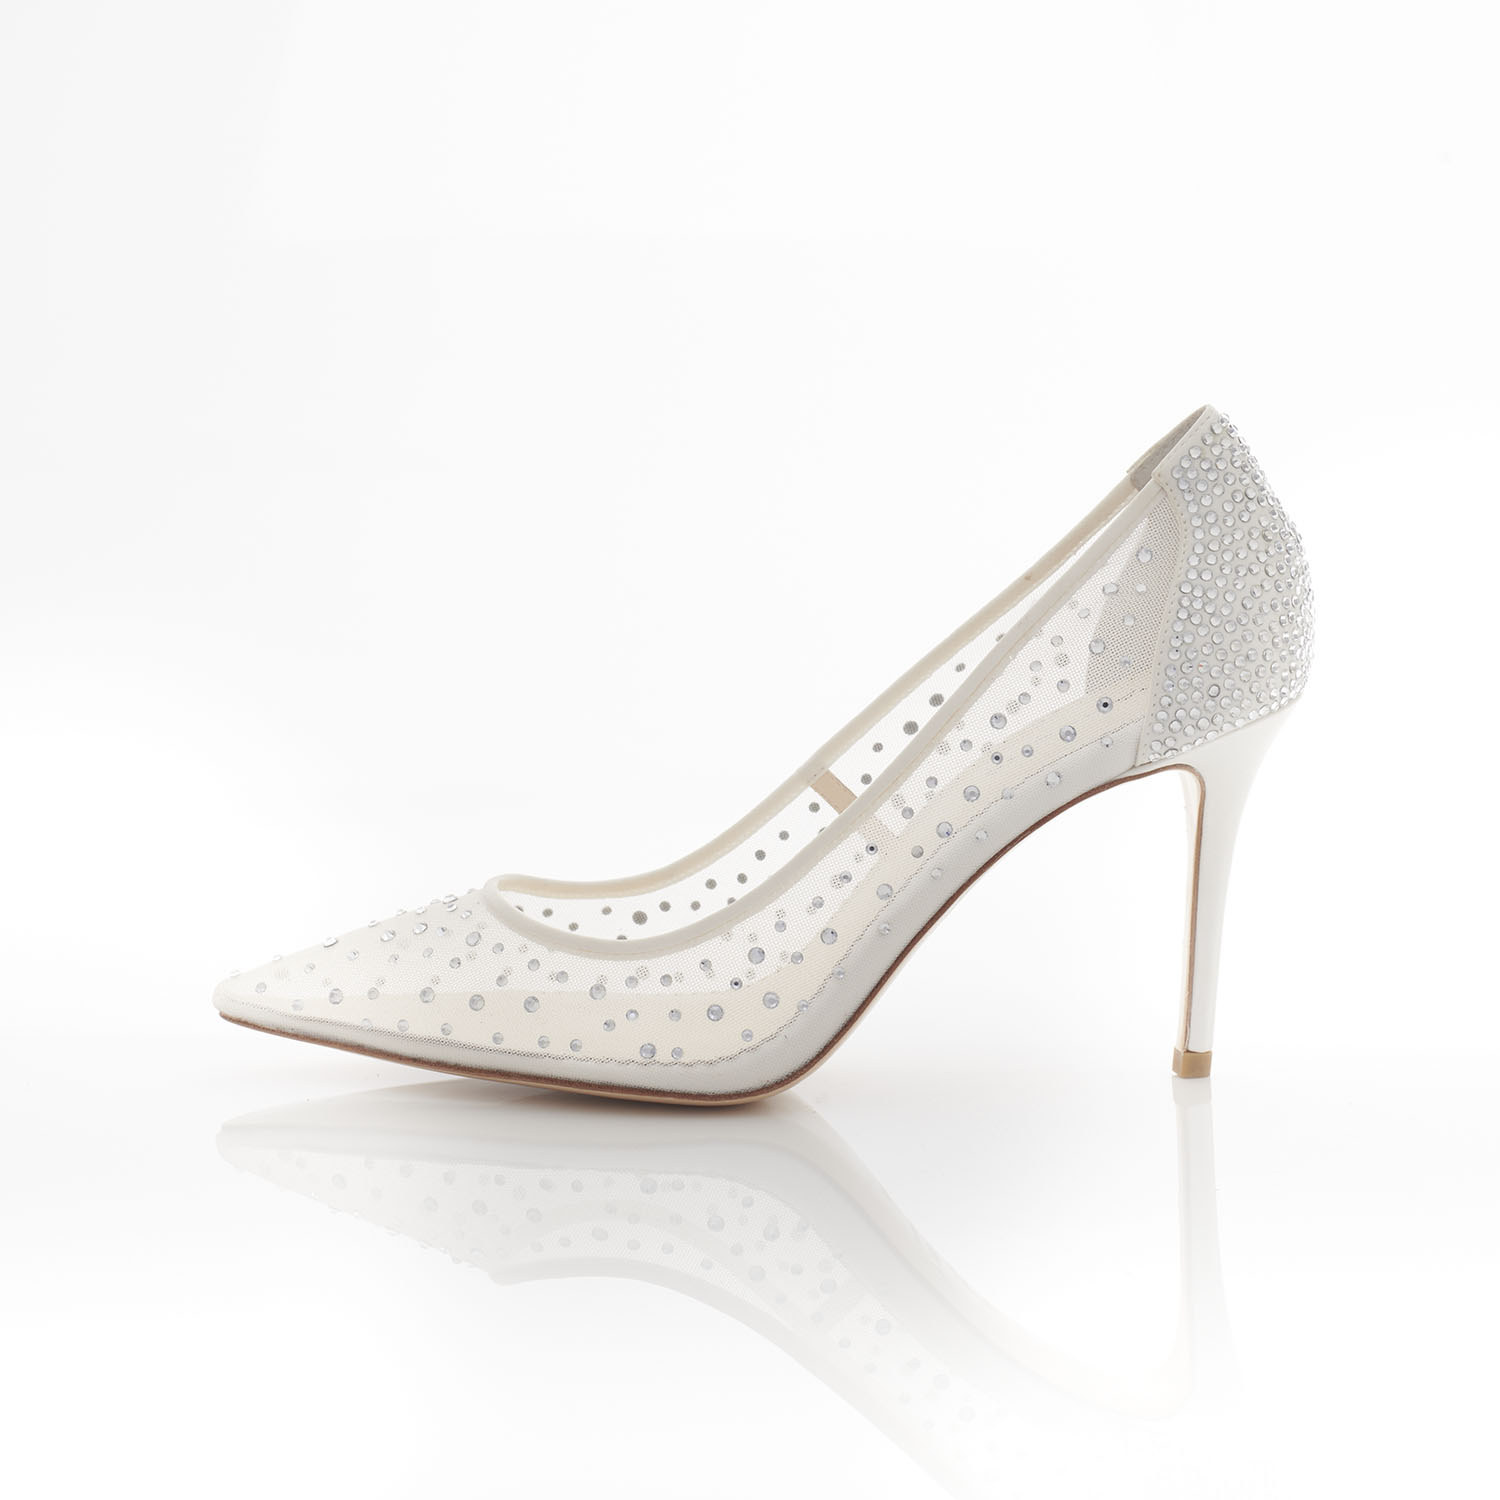 Zara - Panache Bridal Shoes